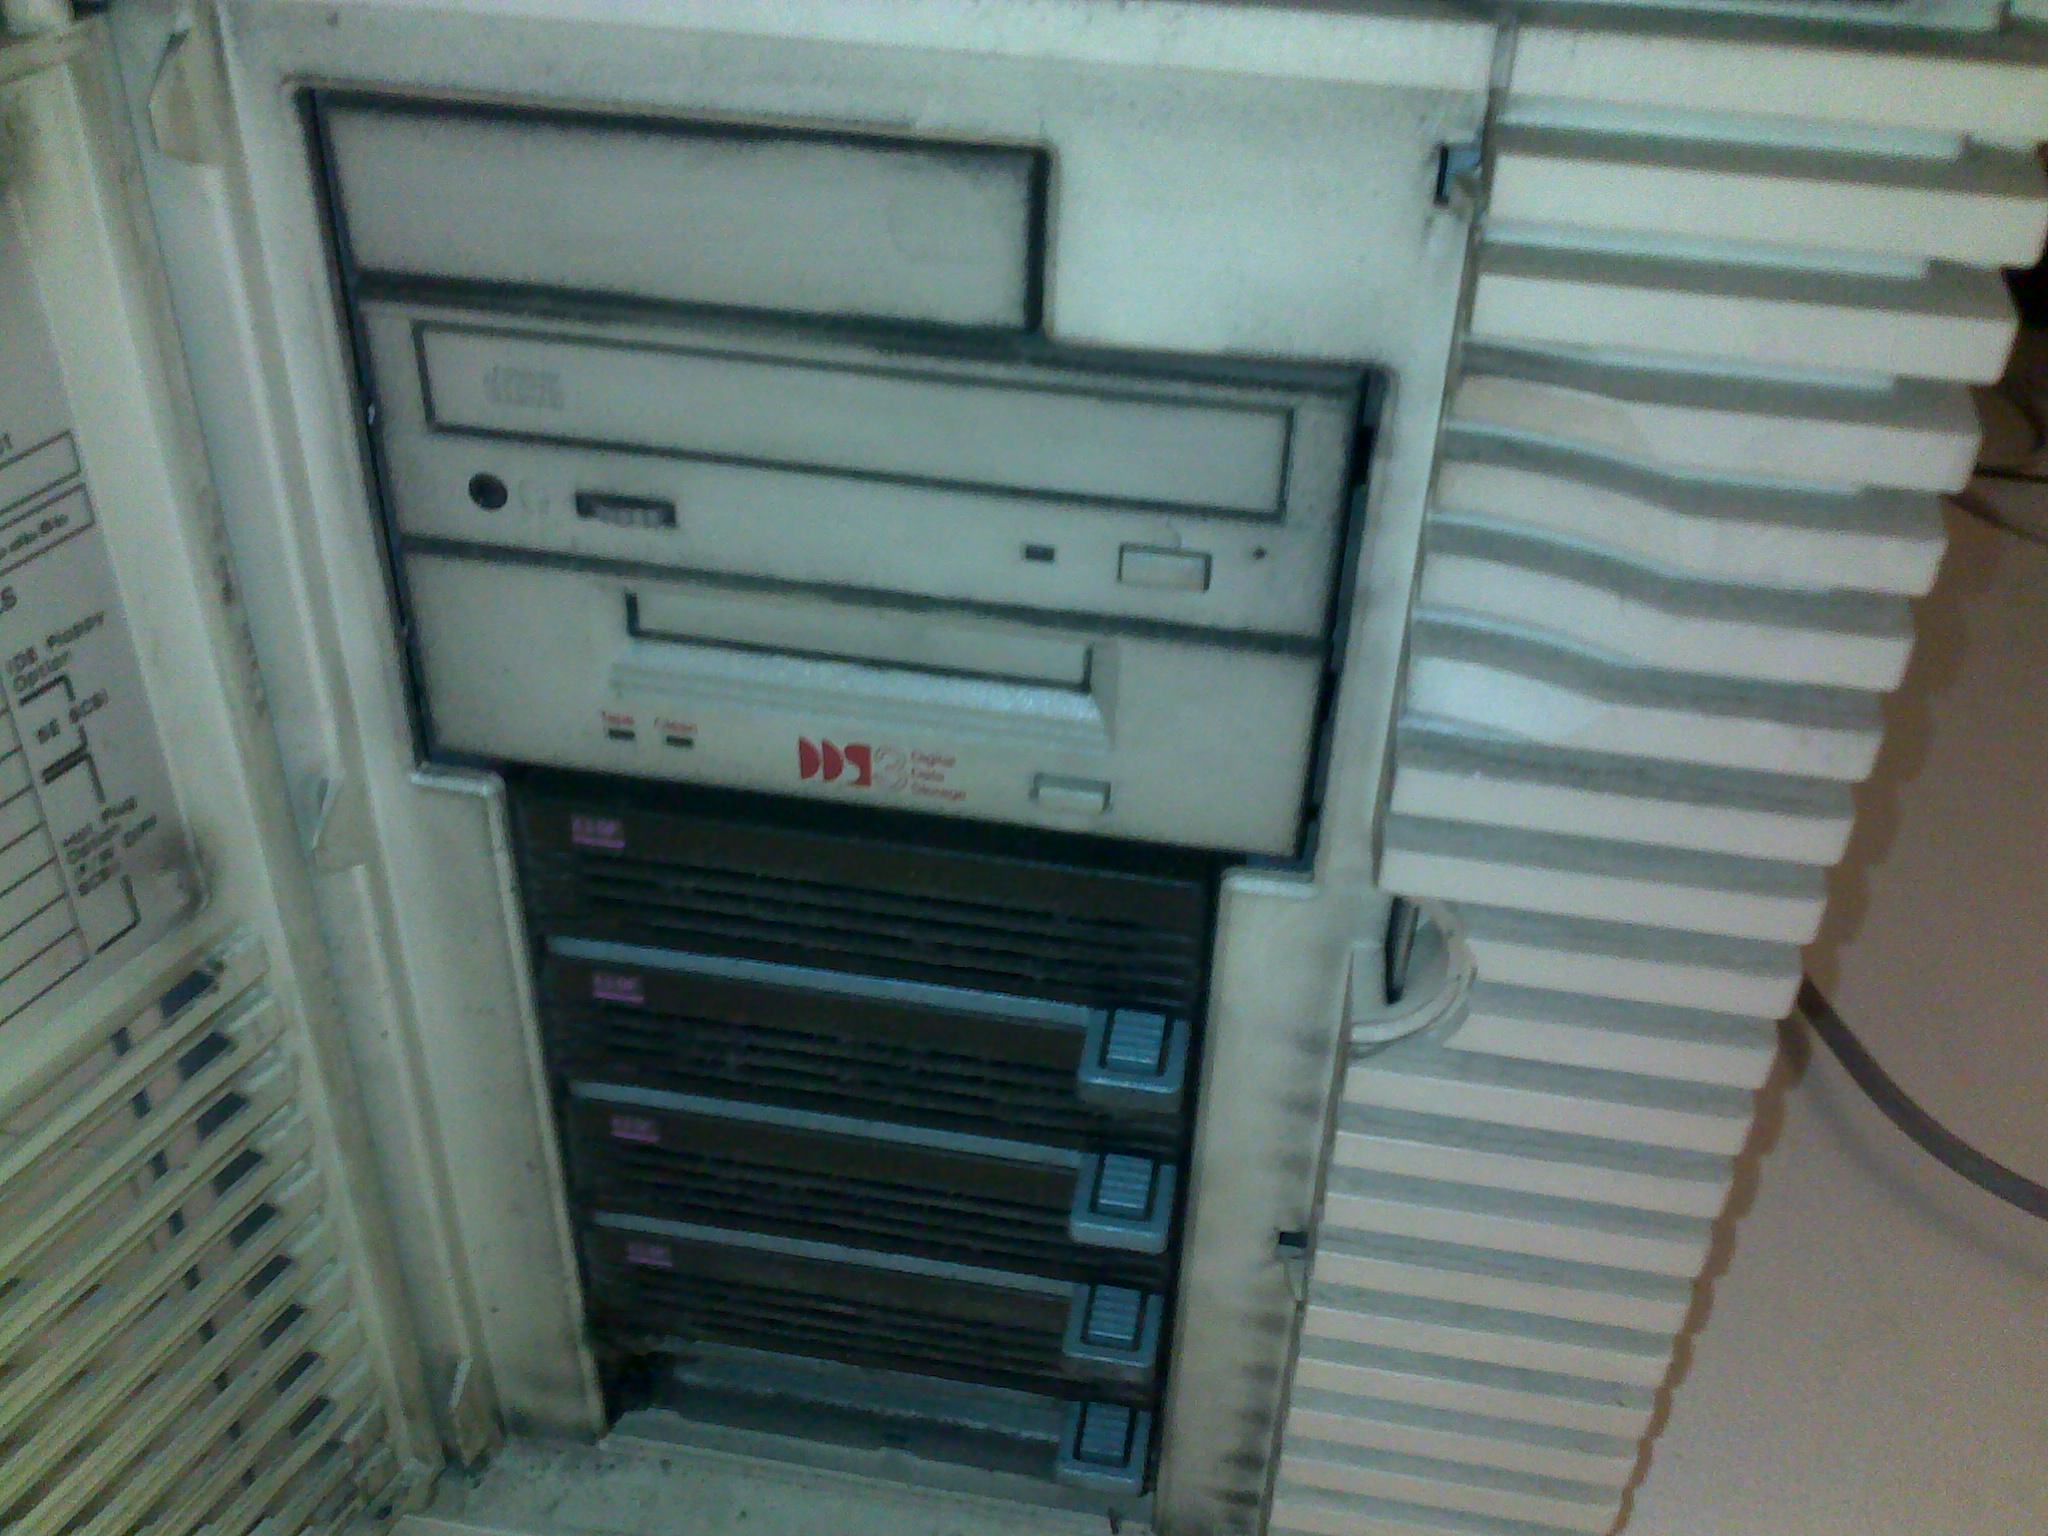 D330 Disks